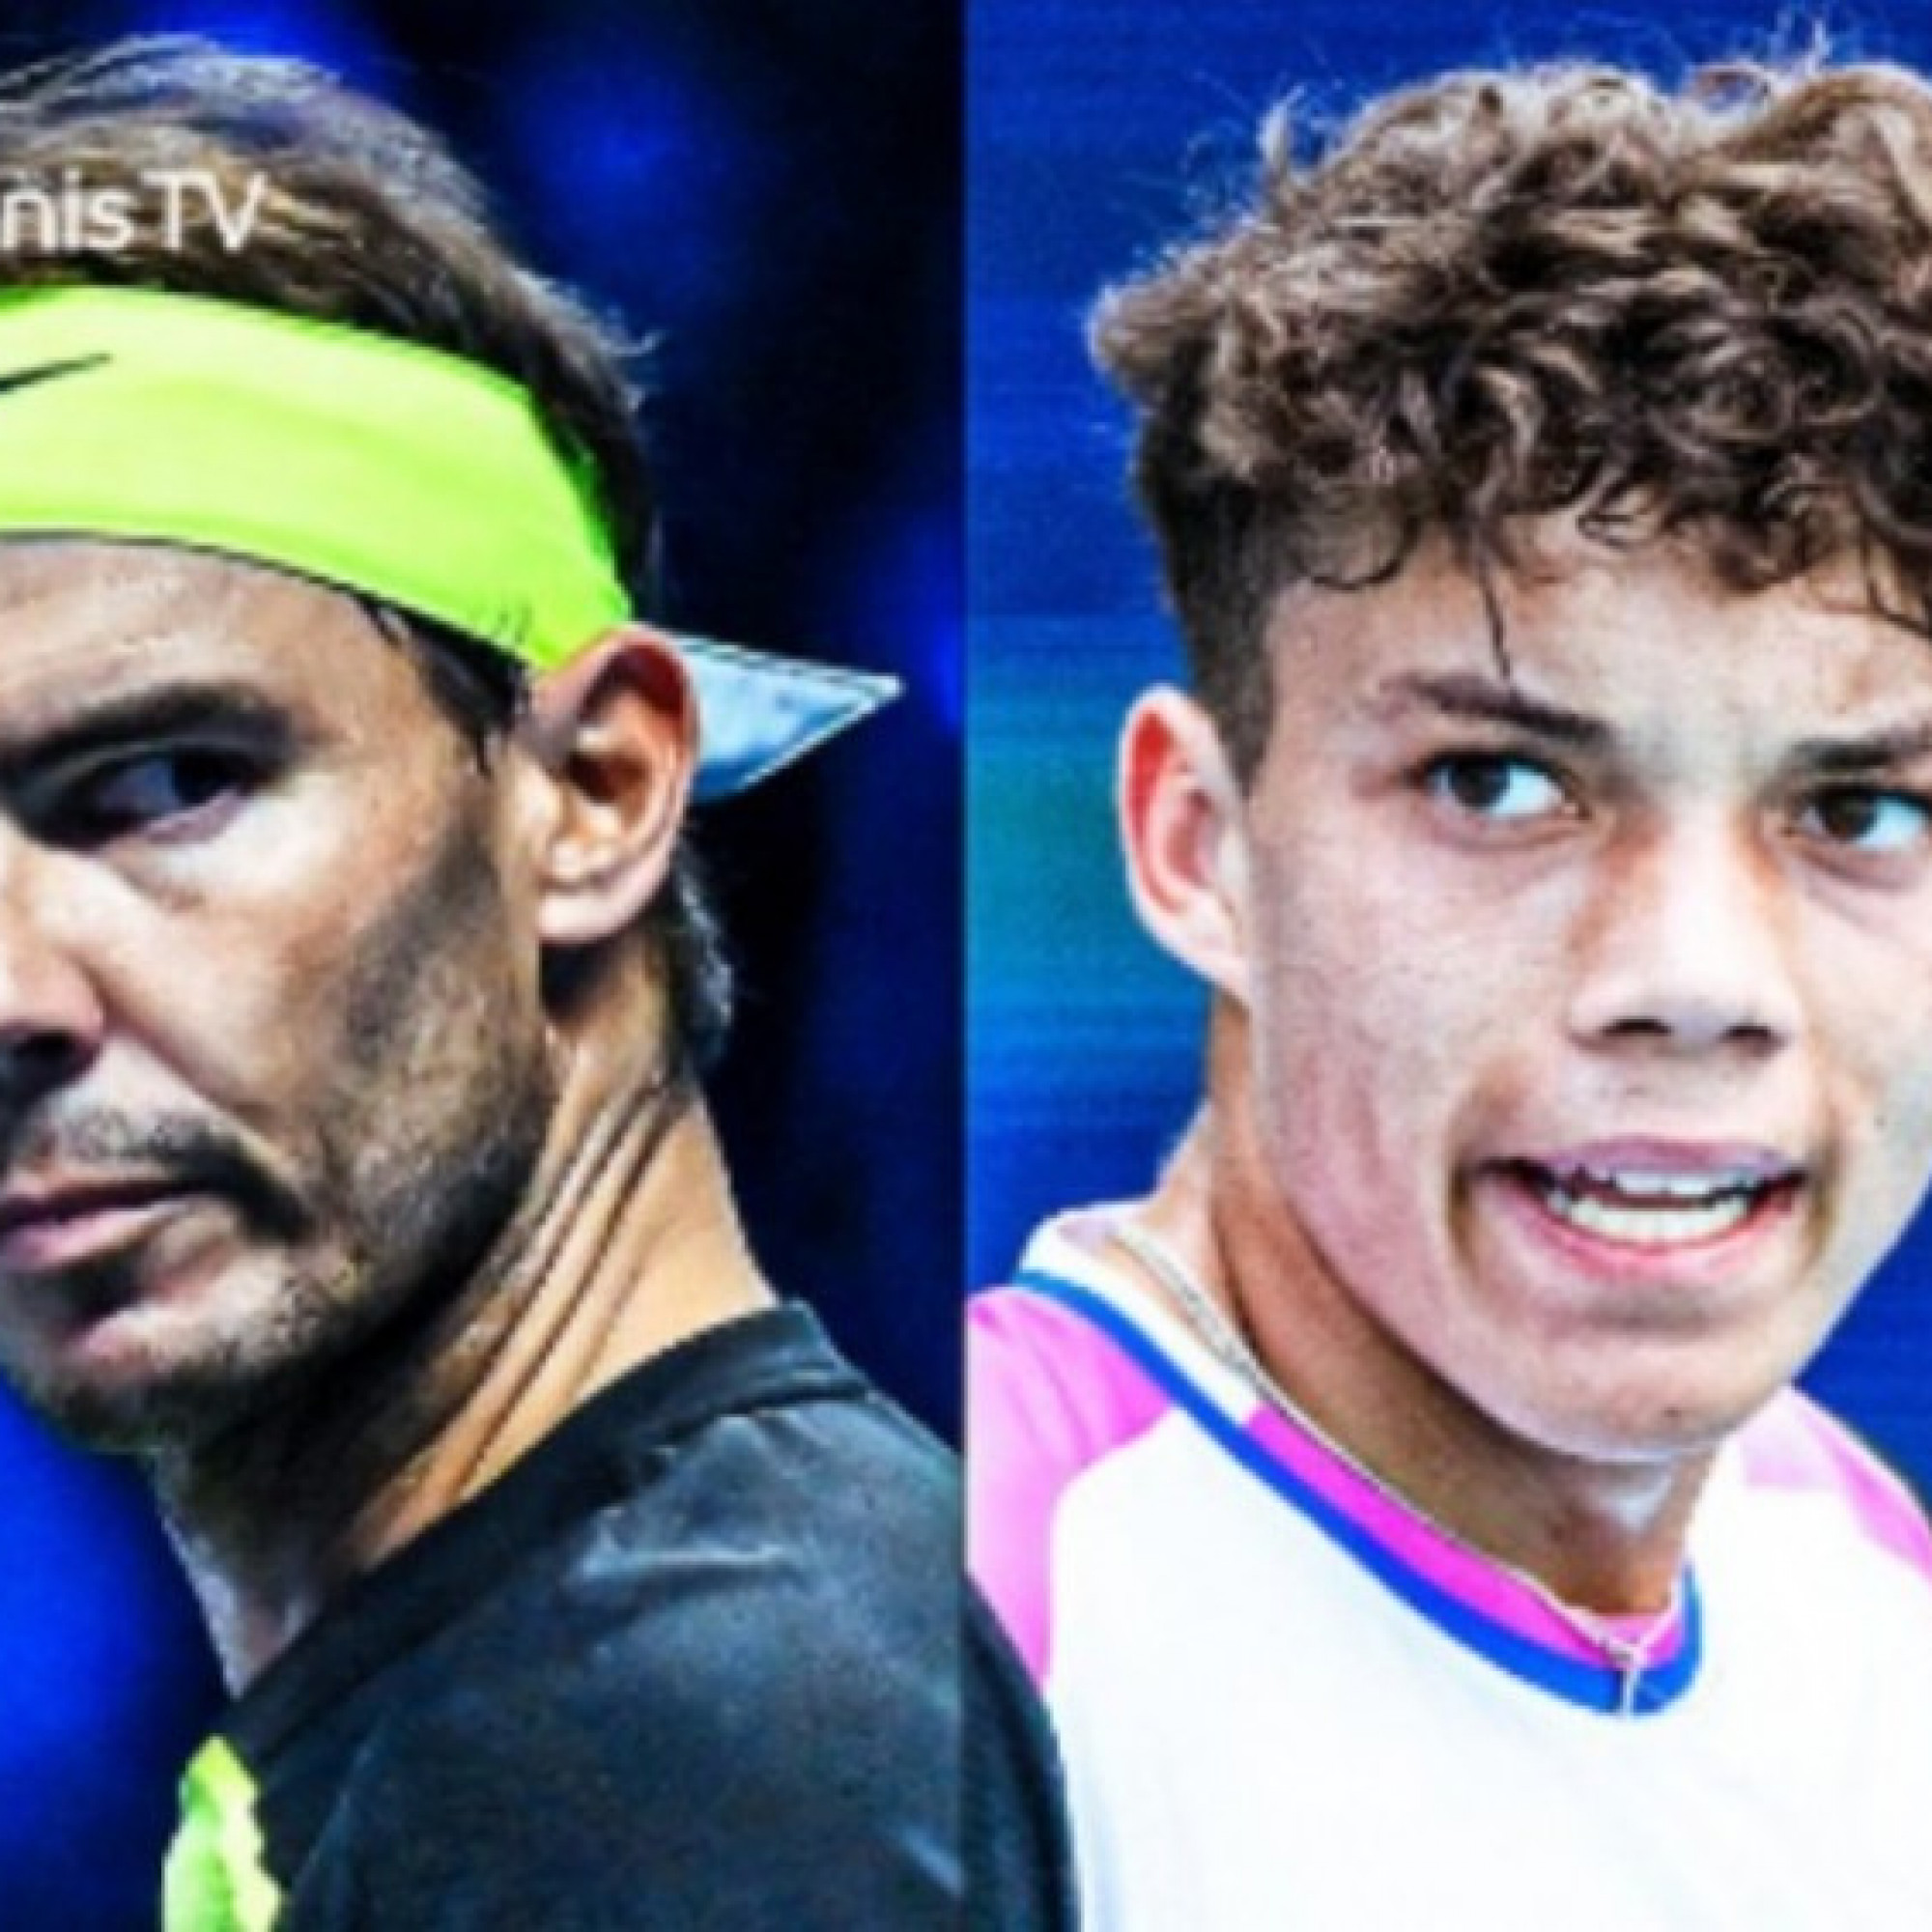  - "Ông cháu" 16 tuổi hào hứng đấu Nadal, mơ "địa chấn" ở Madrid Open